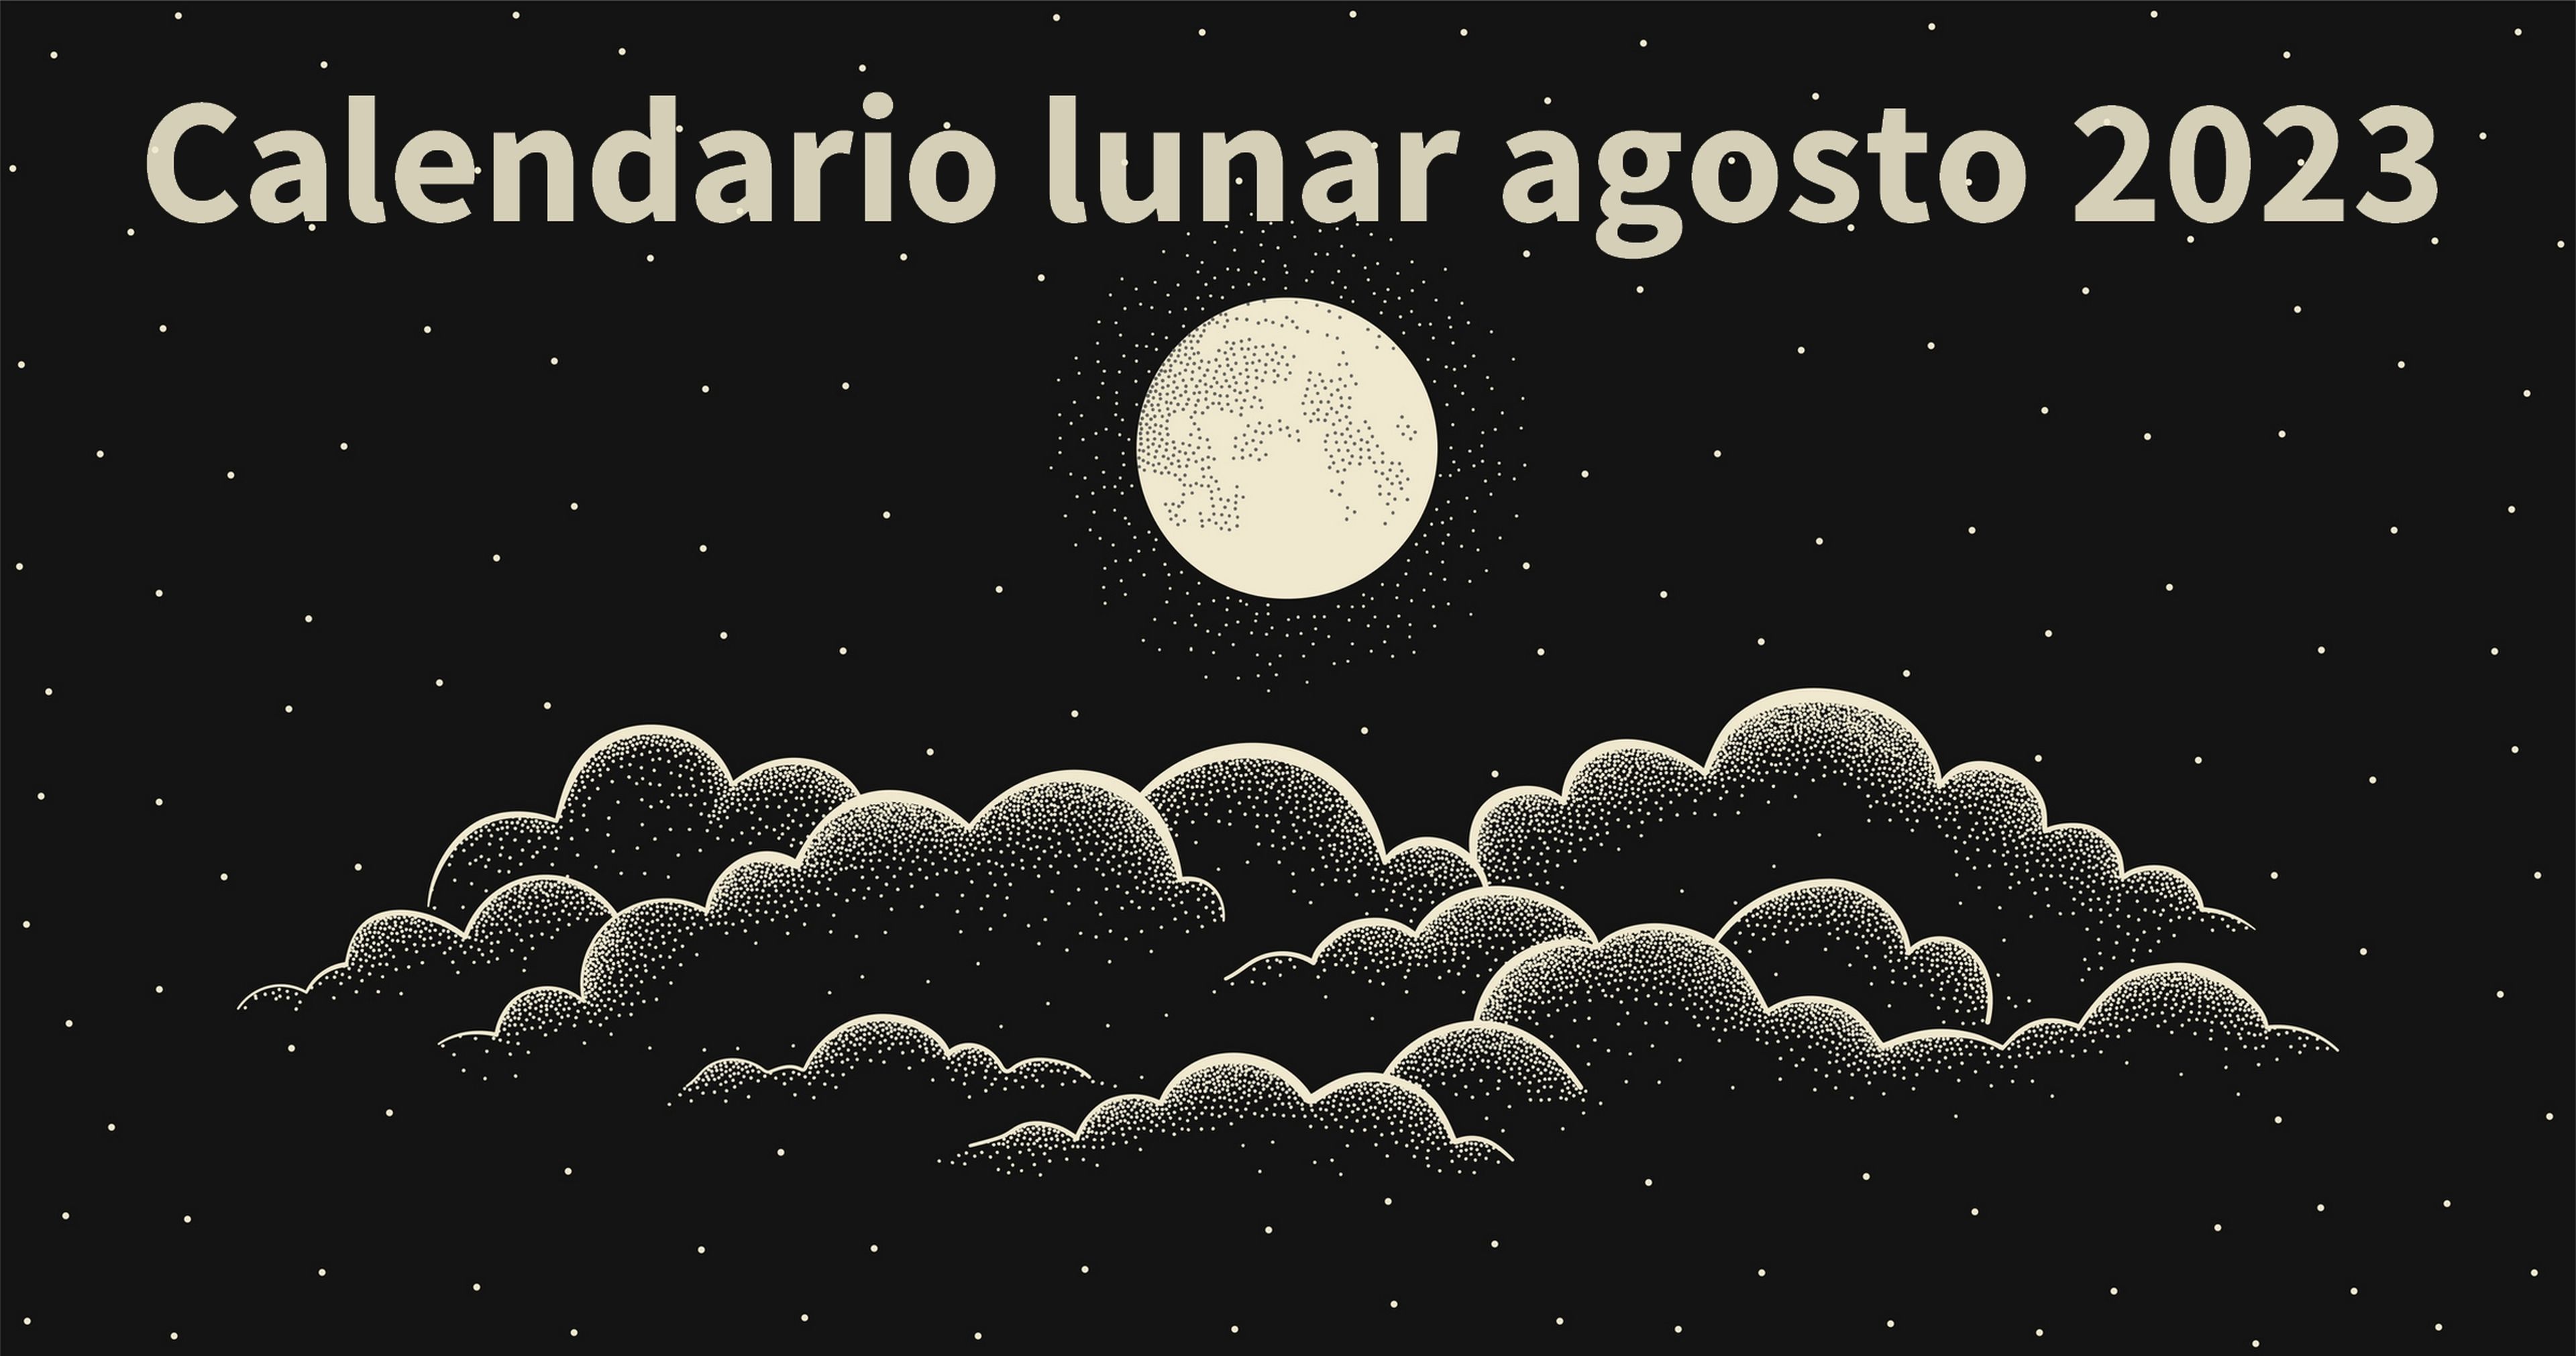 Calendario lunar agosto 2023: todas las fases de la Luna para los soñadores, astrónomos y fotógrafos